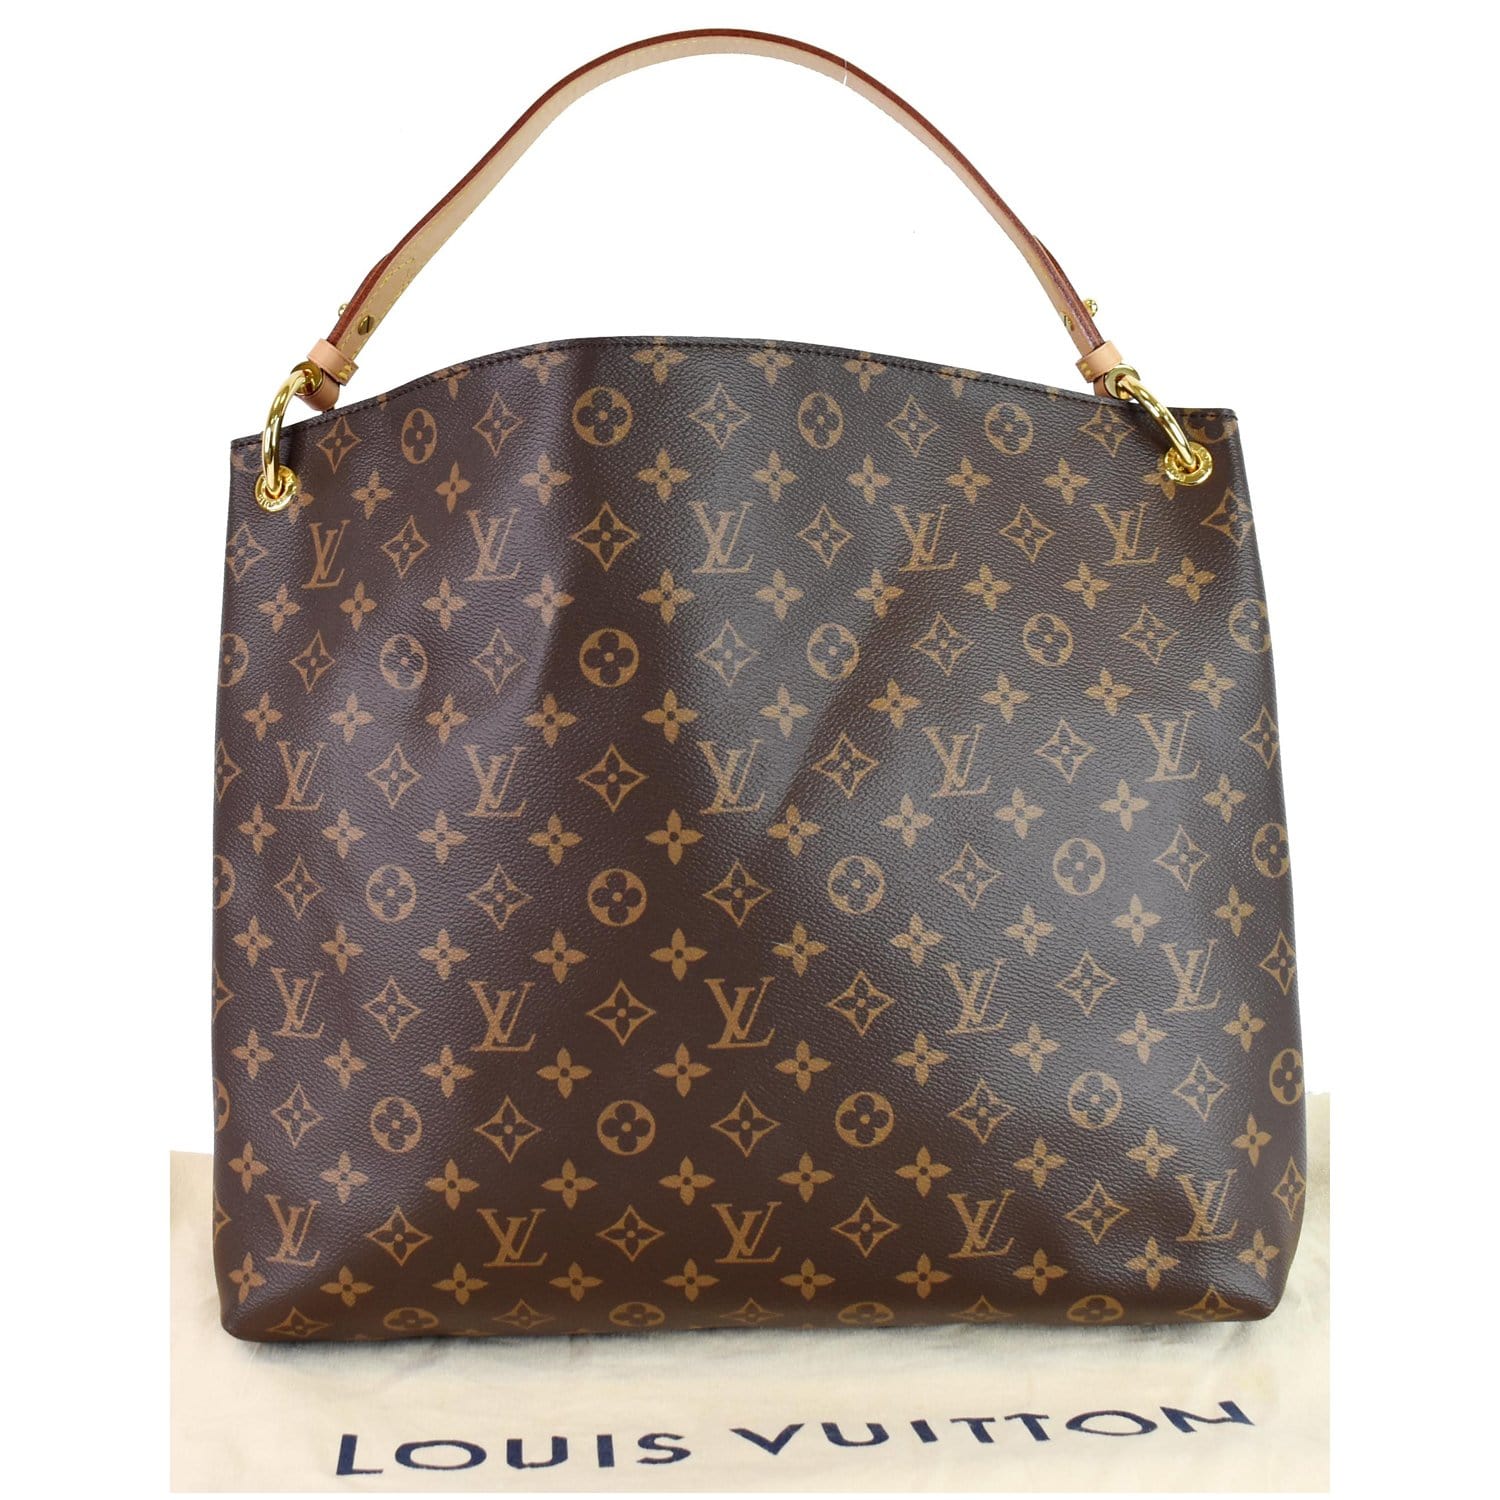 Louis Vuitton Graceful MM Bag Review / Monogram Coated Canvas Print 